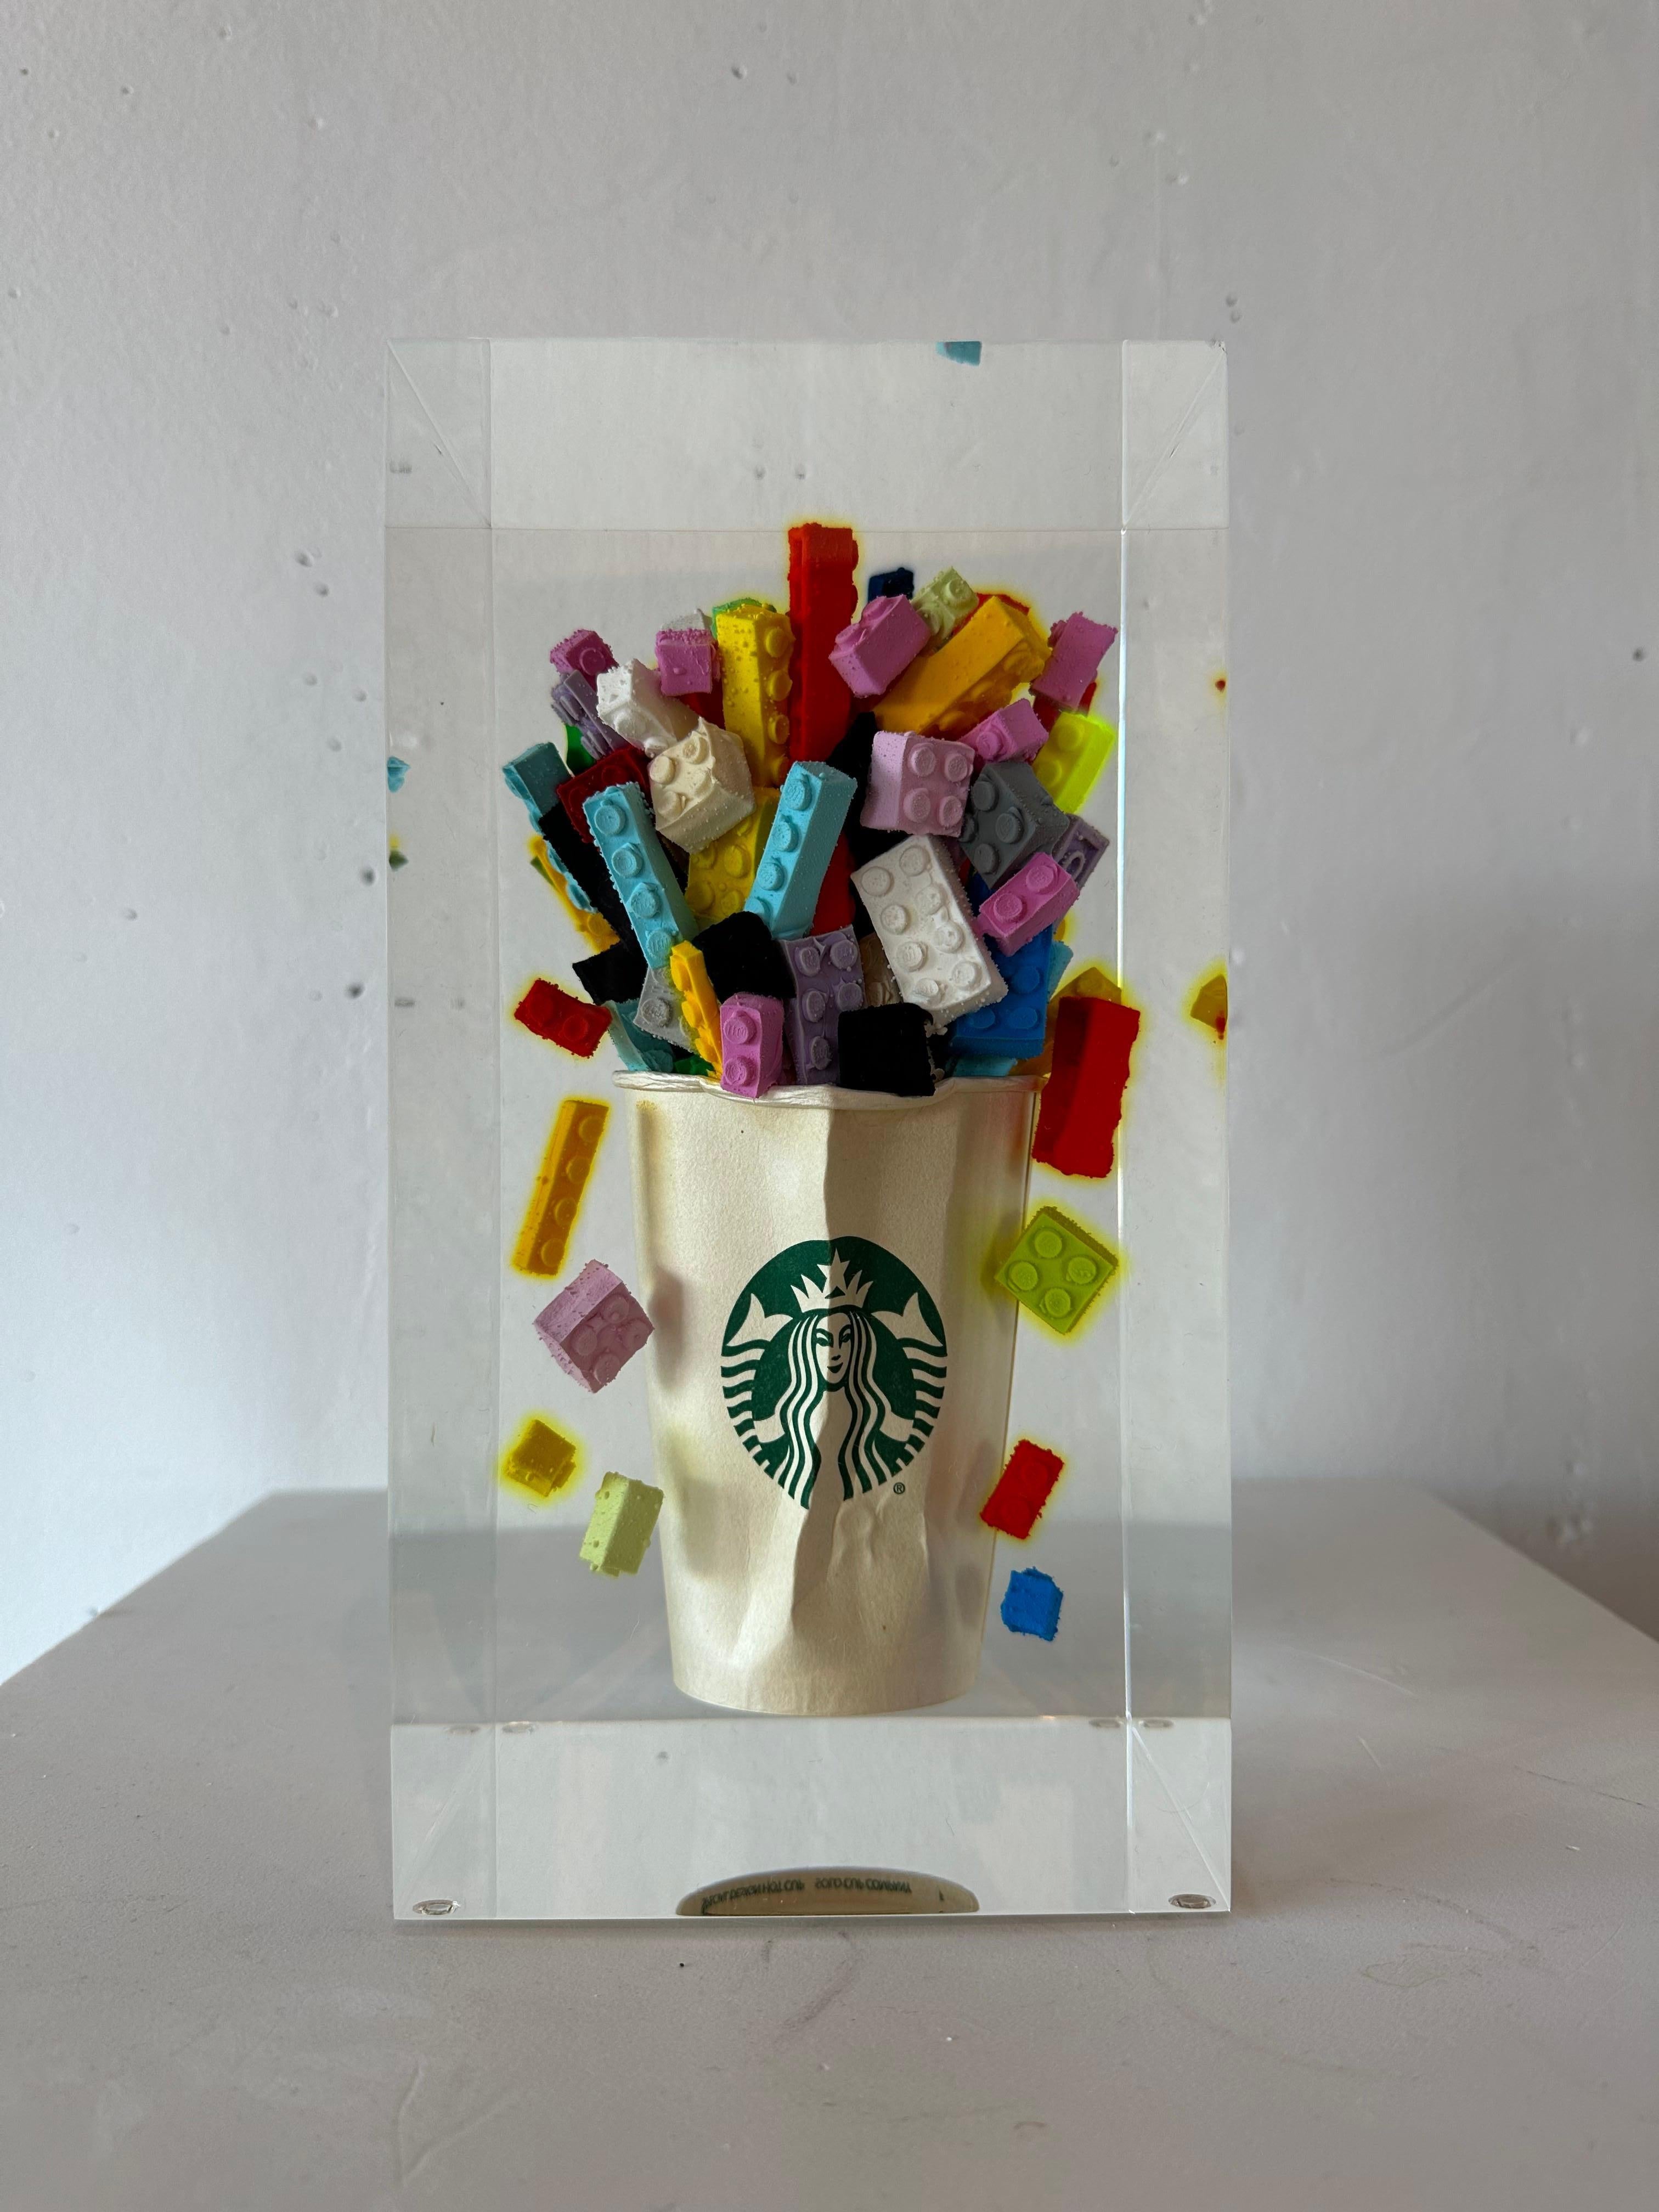 Figurative Sculpture de Helder Batista - Lego - Cino